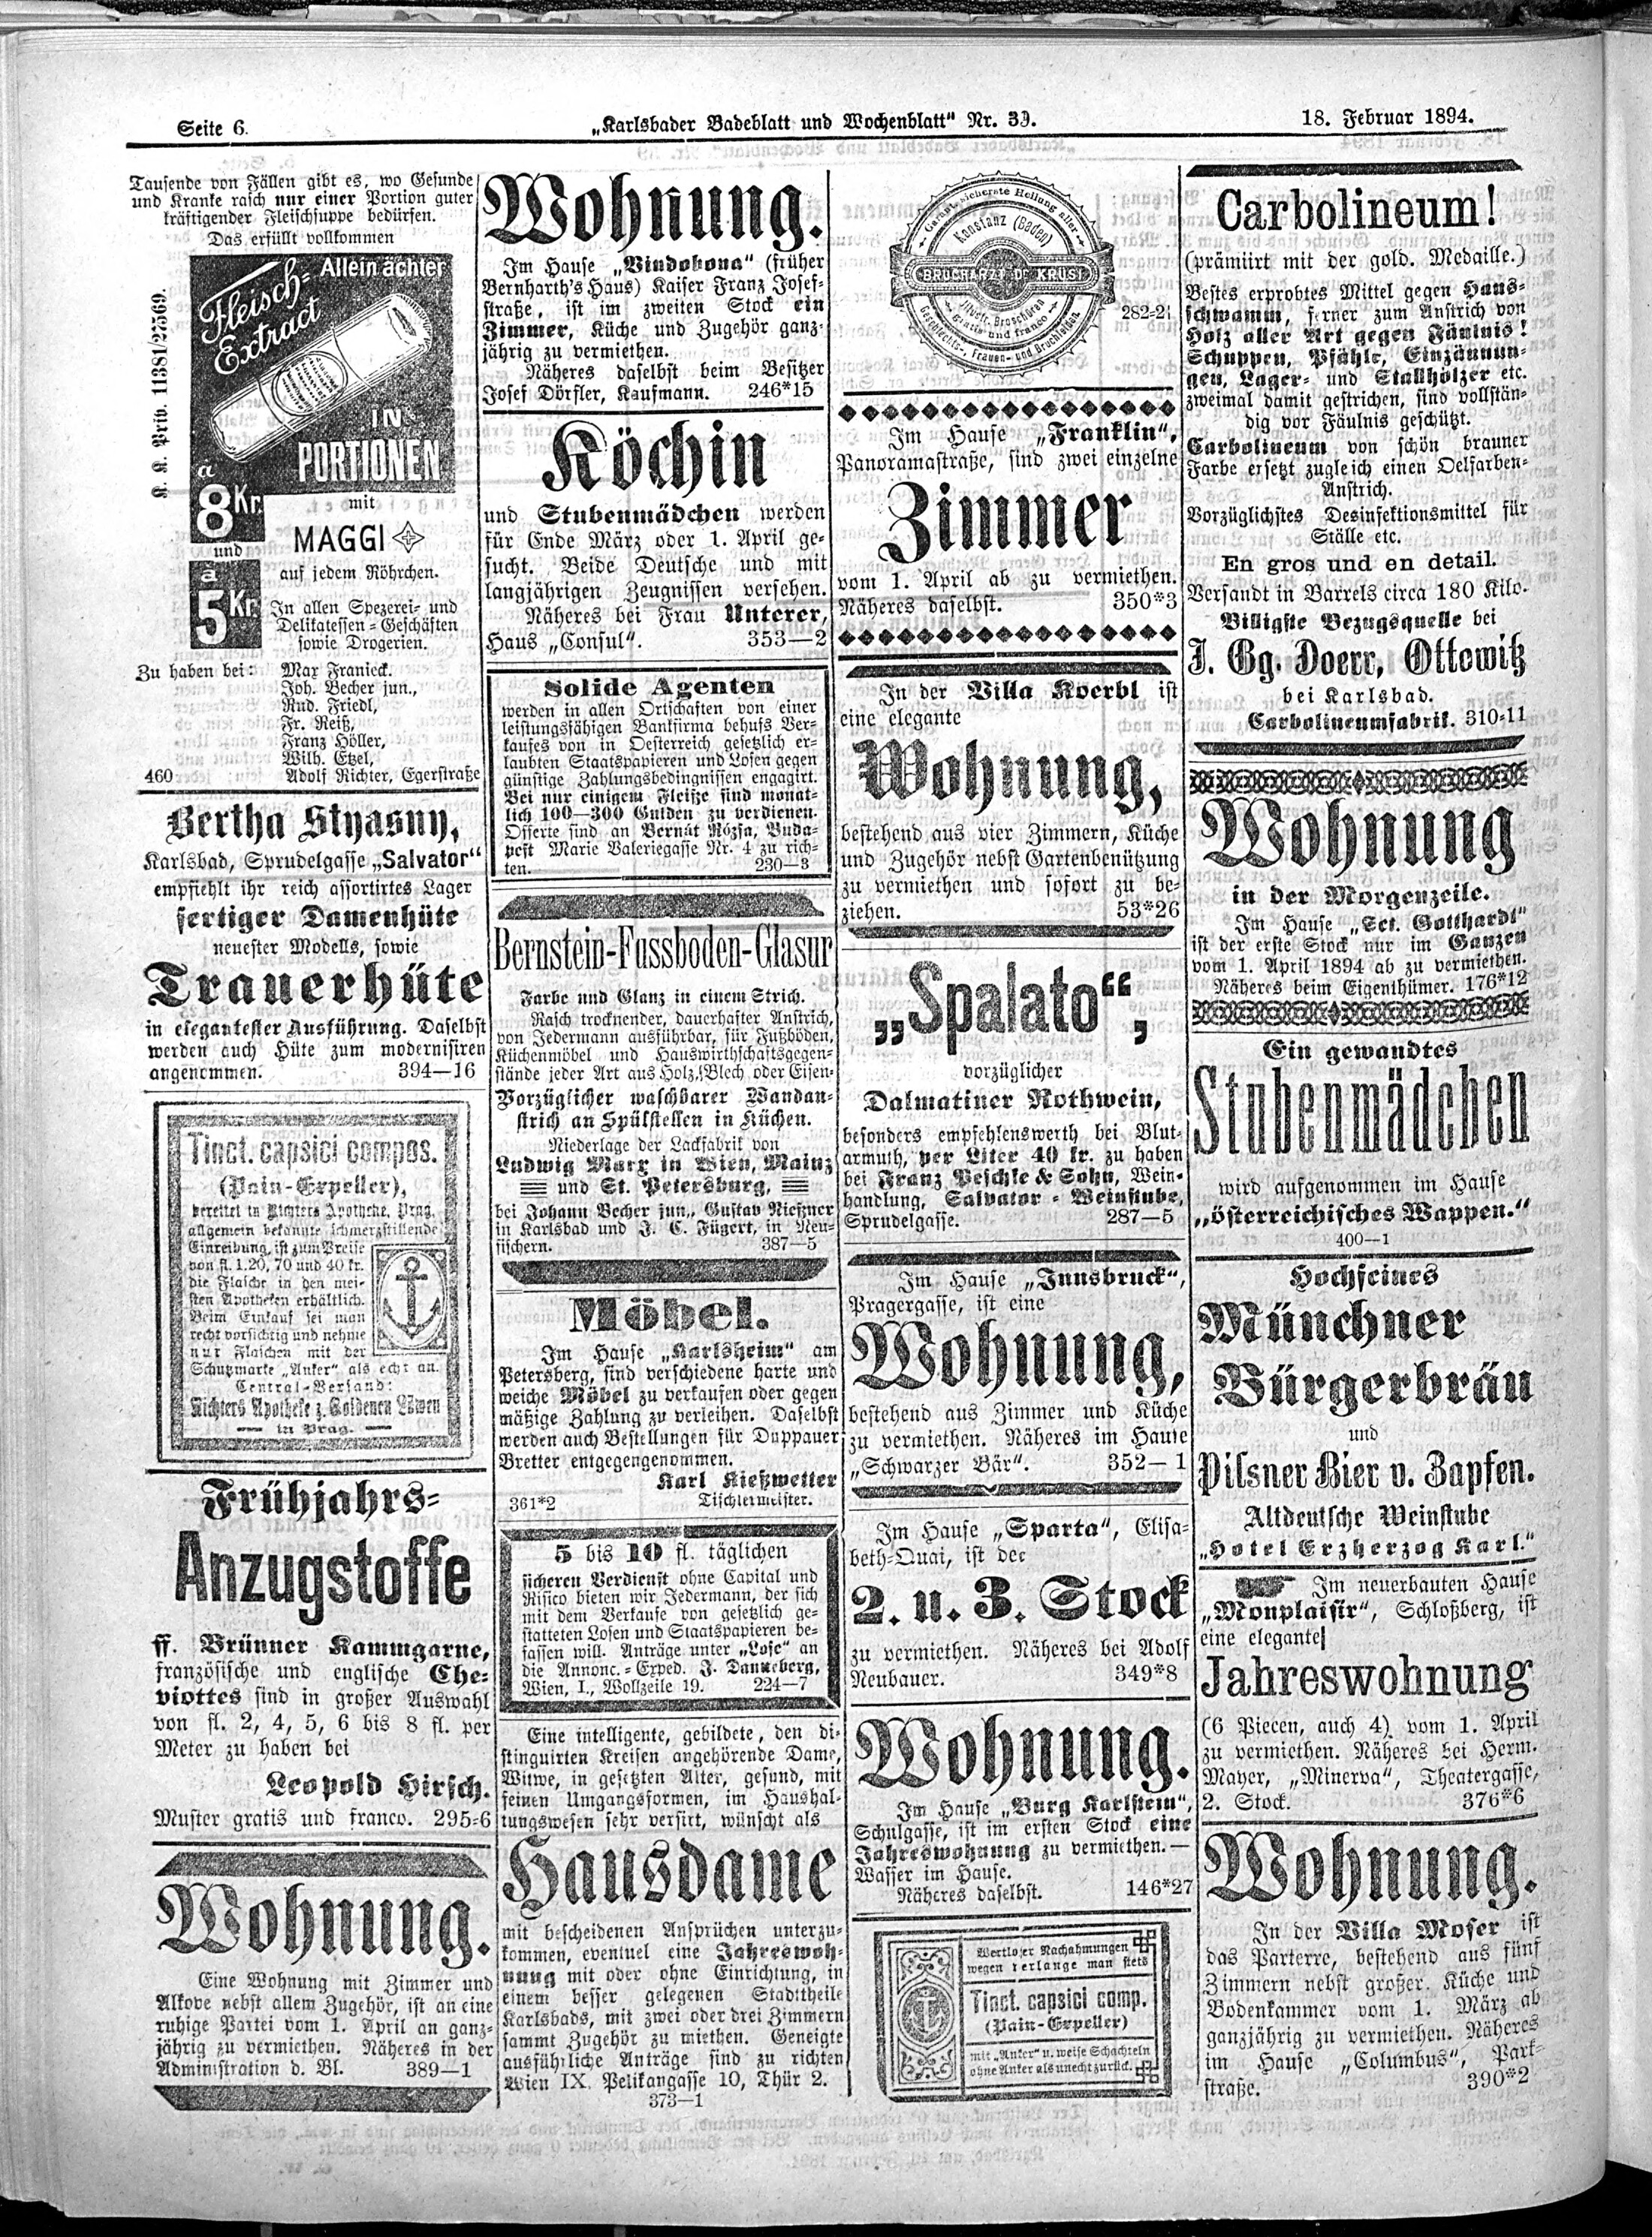 6. karlsbader-badeblatt-1894-02-18-n39_1610